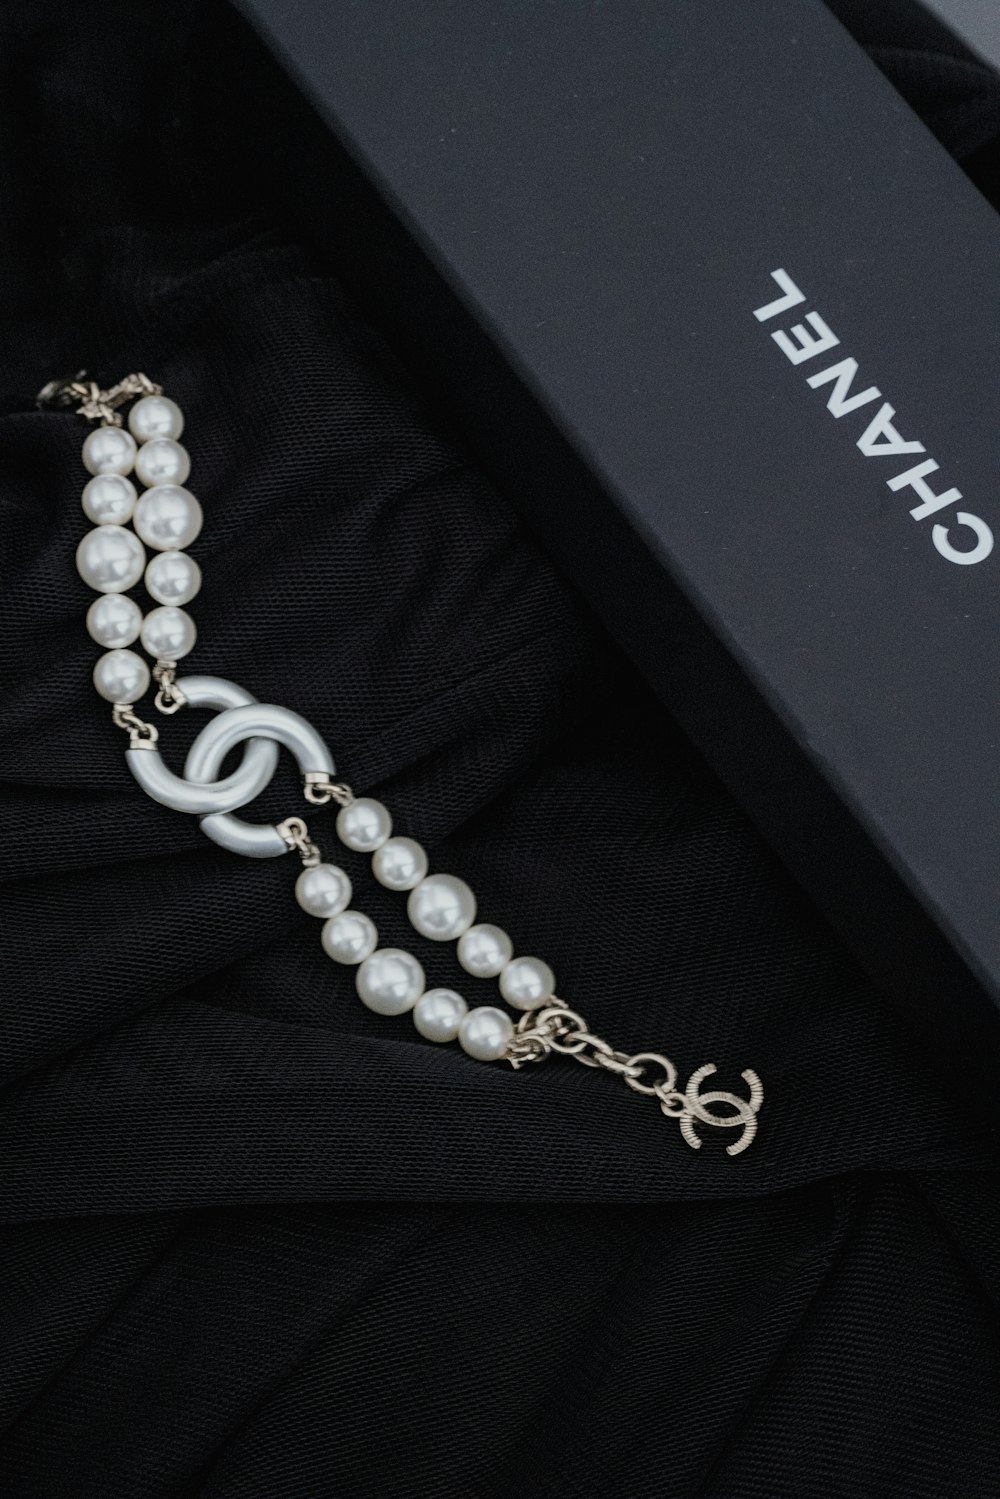 eine schwarze Box mit Halskette und Perlen